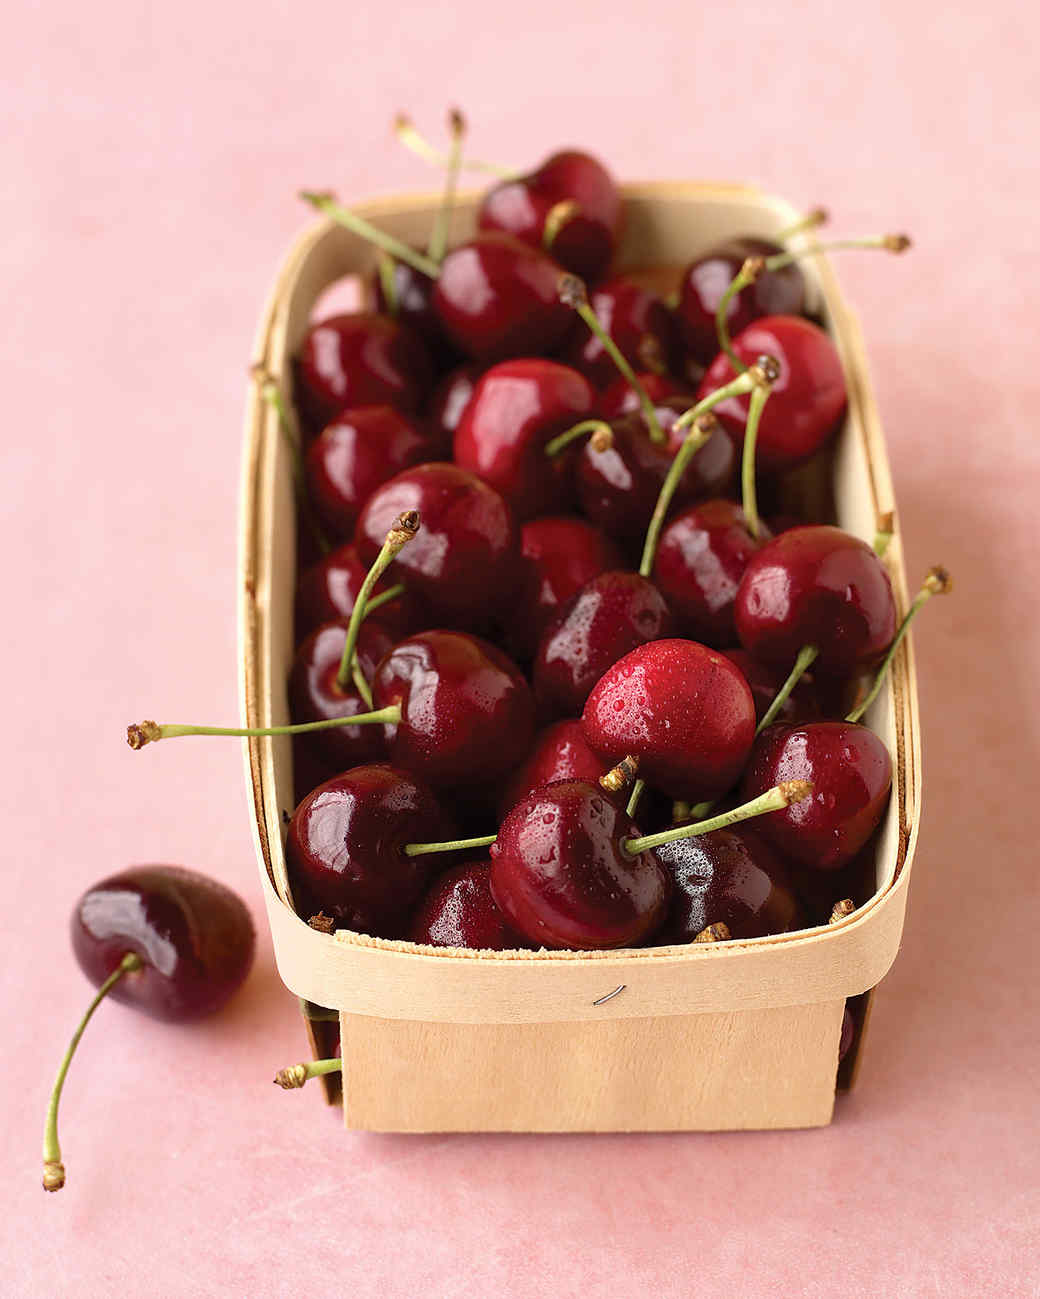 bing cherries